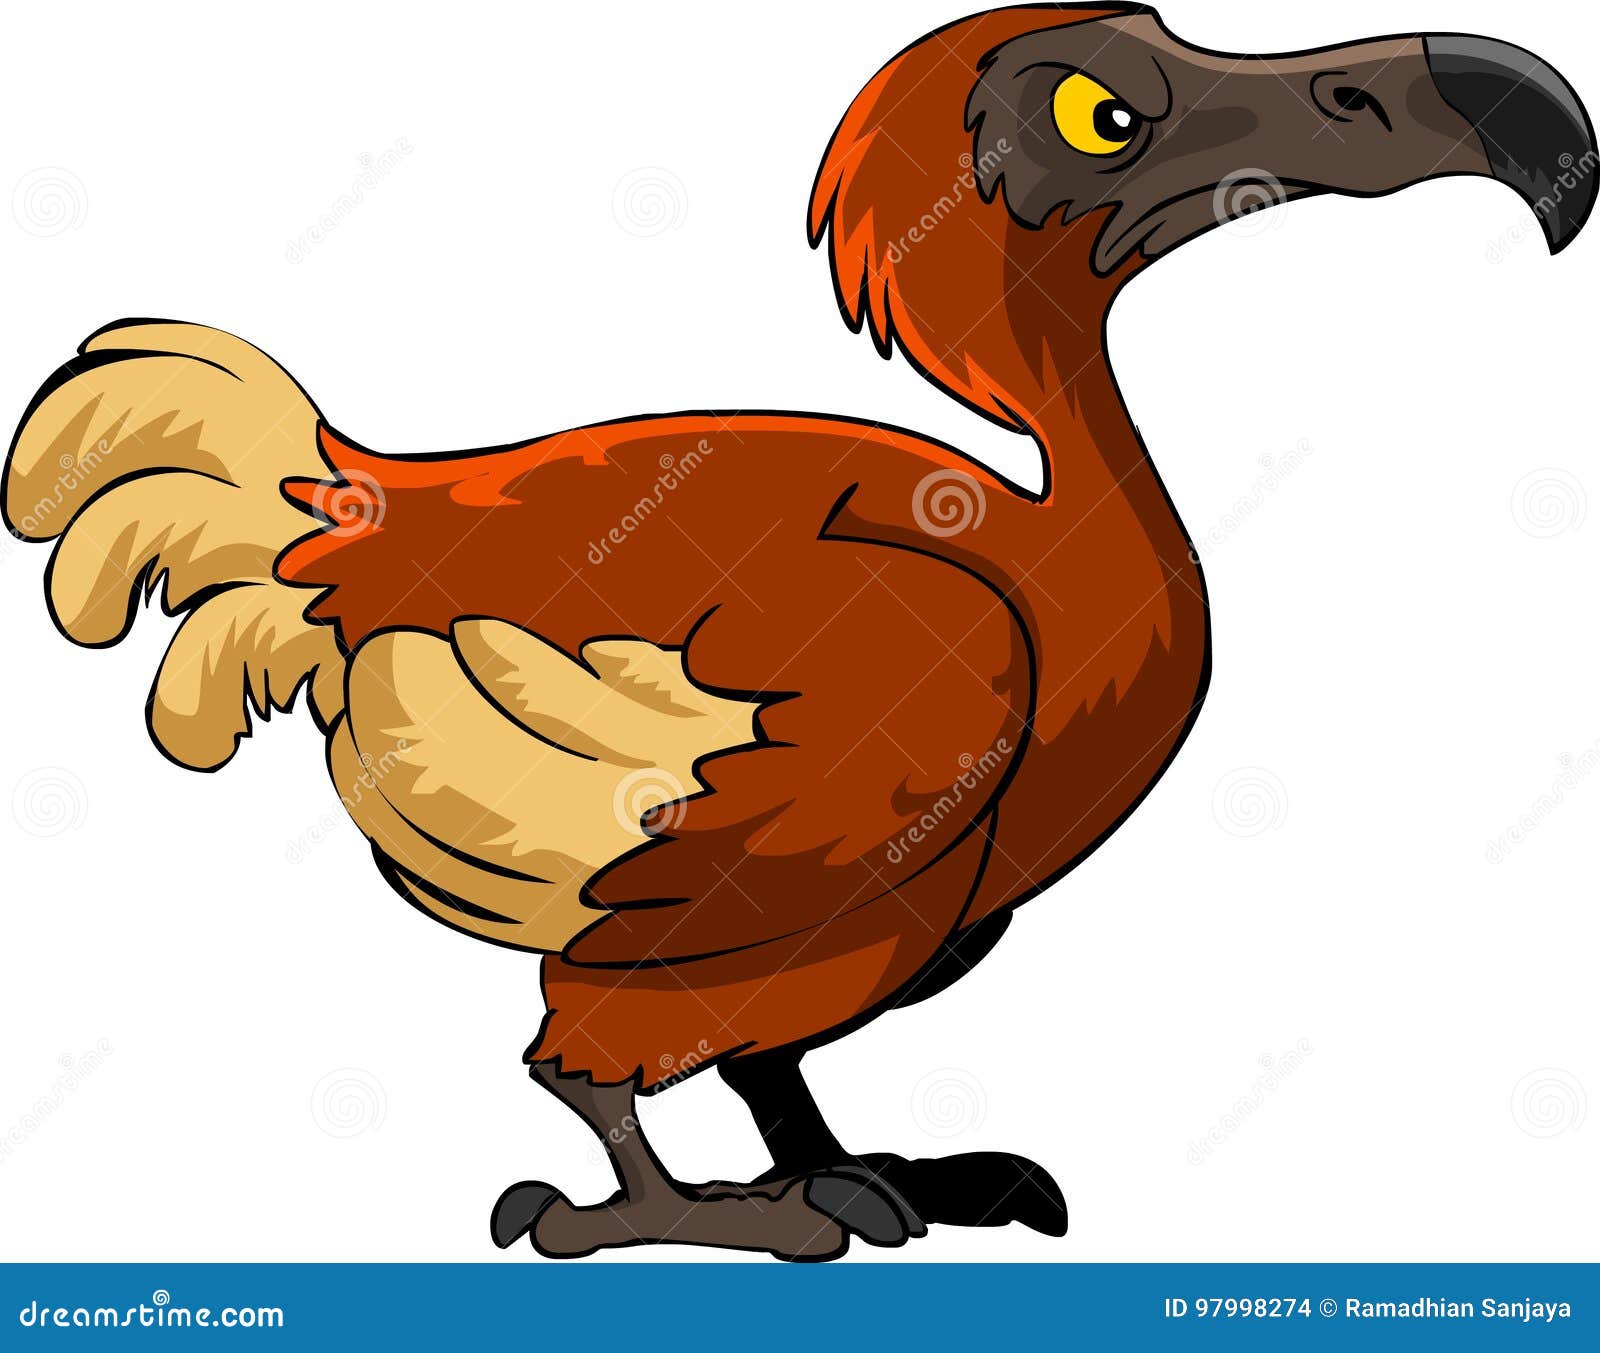 Dodo bird cartoon stock vector. Illustration of dodobird - 97998274